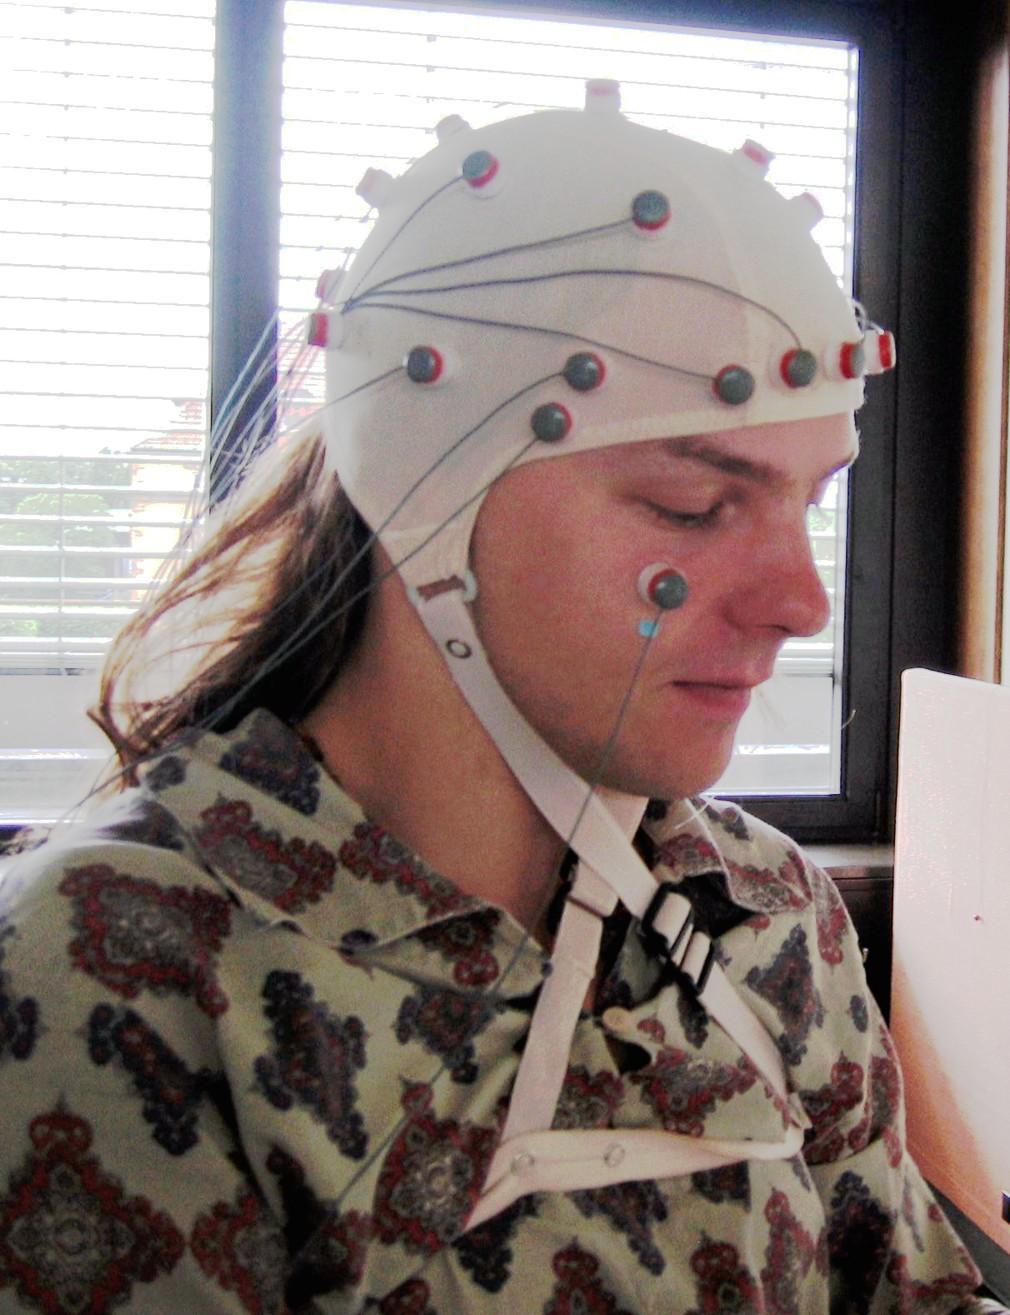 The human EEG